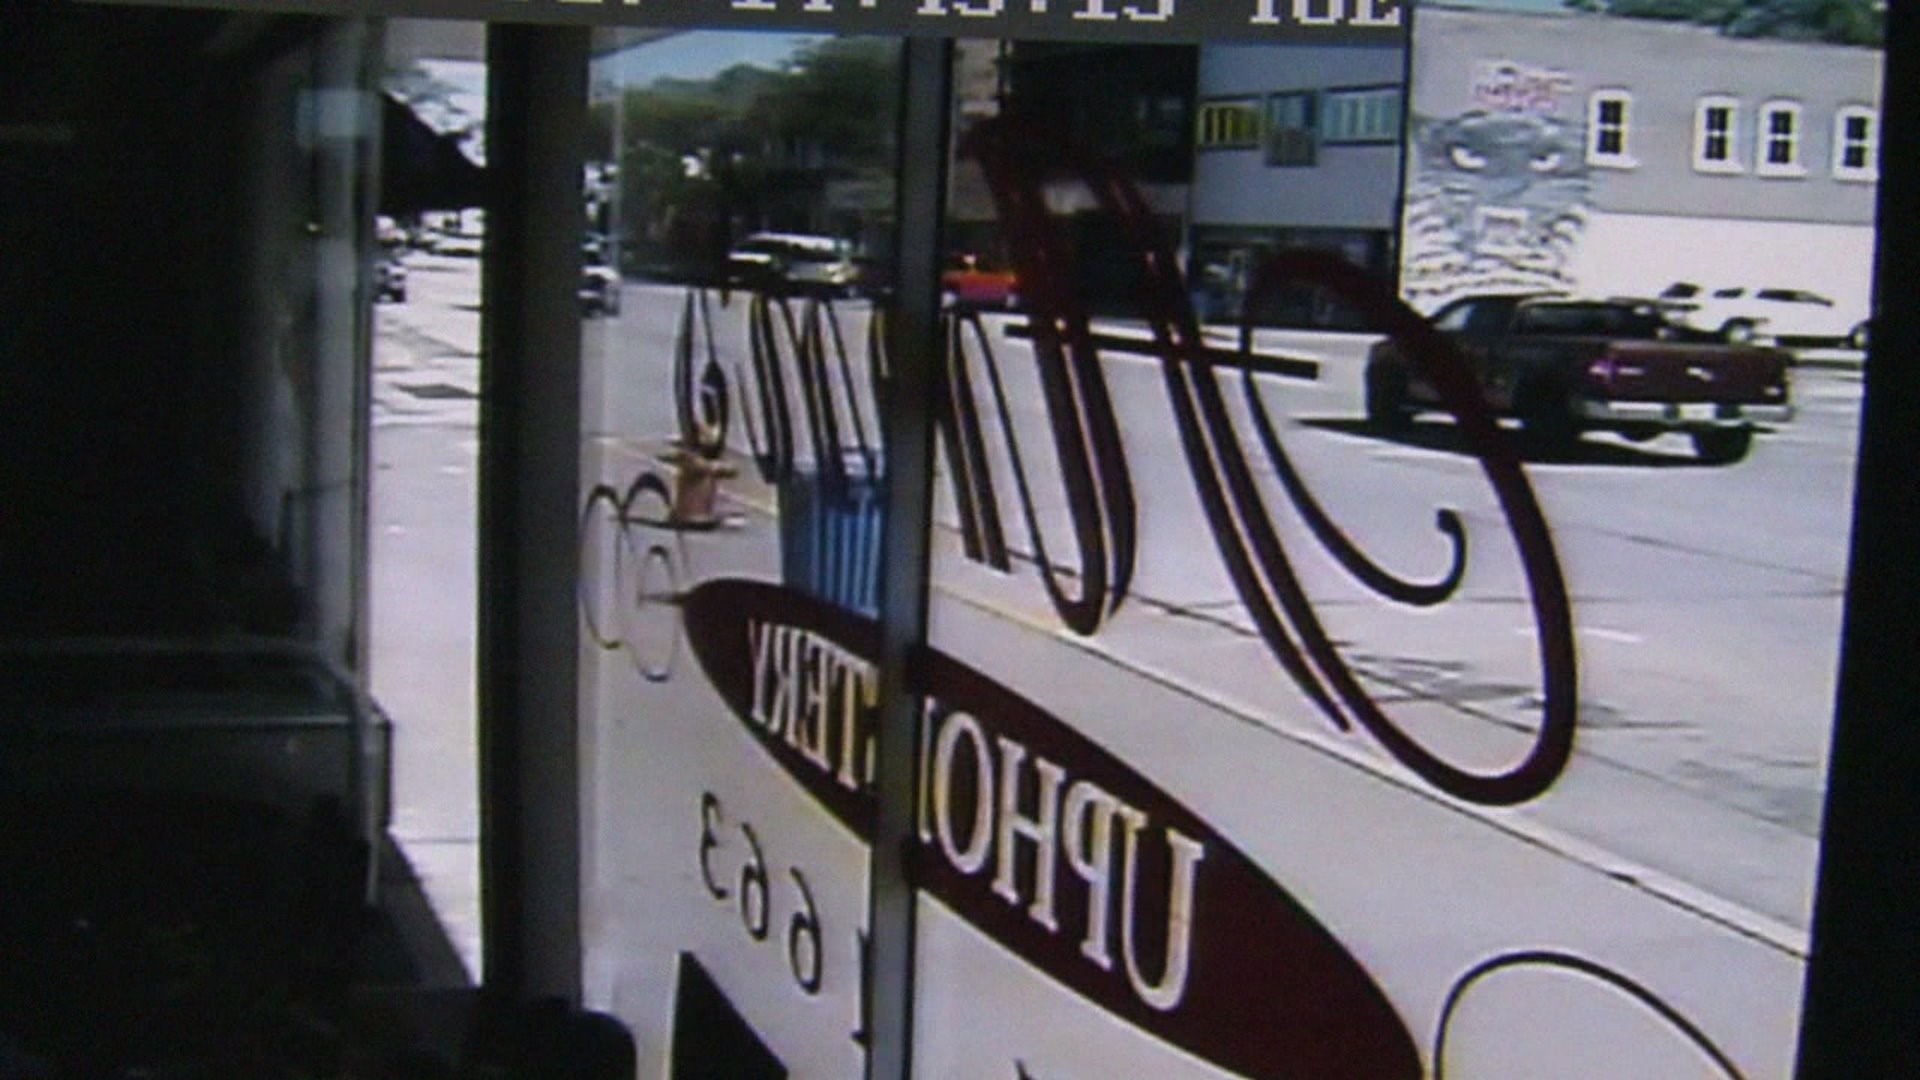 Surveillance video of fire truck theft